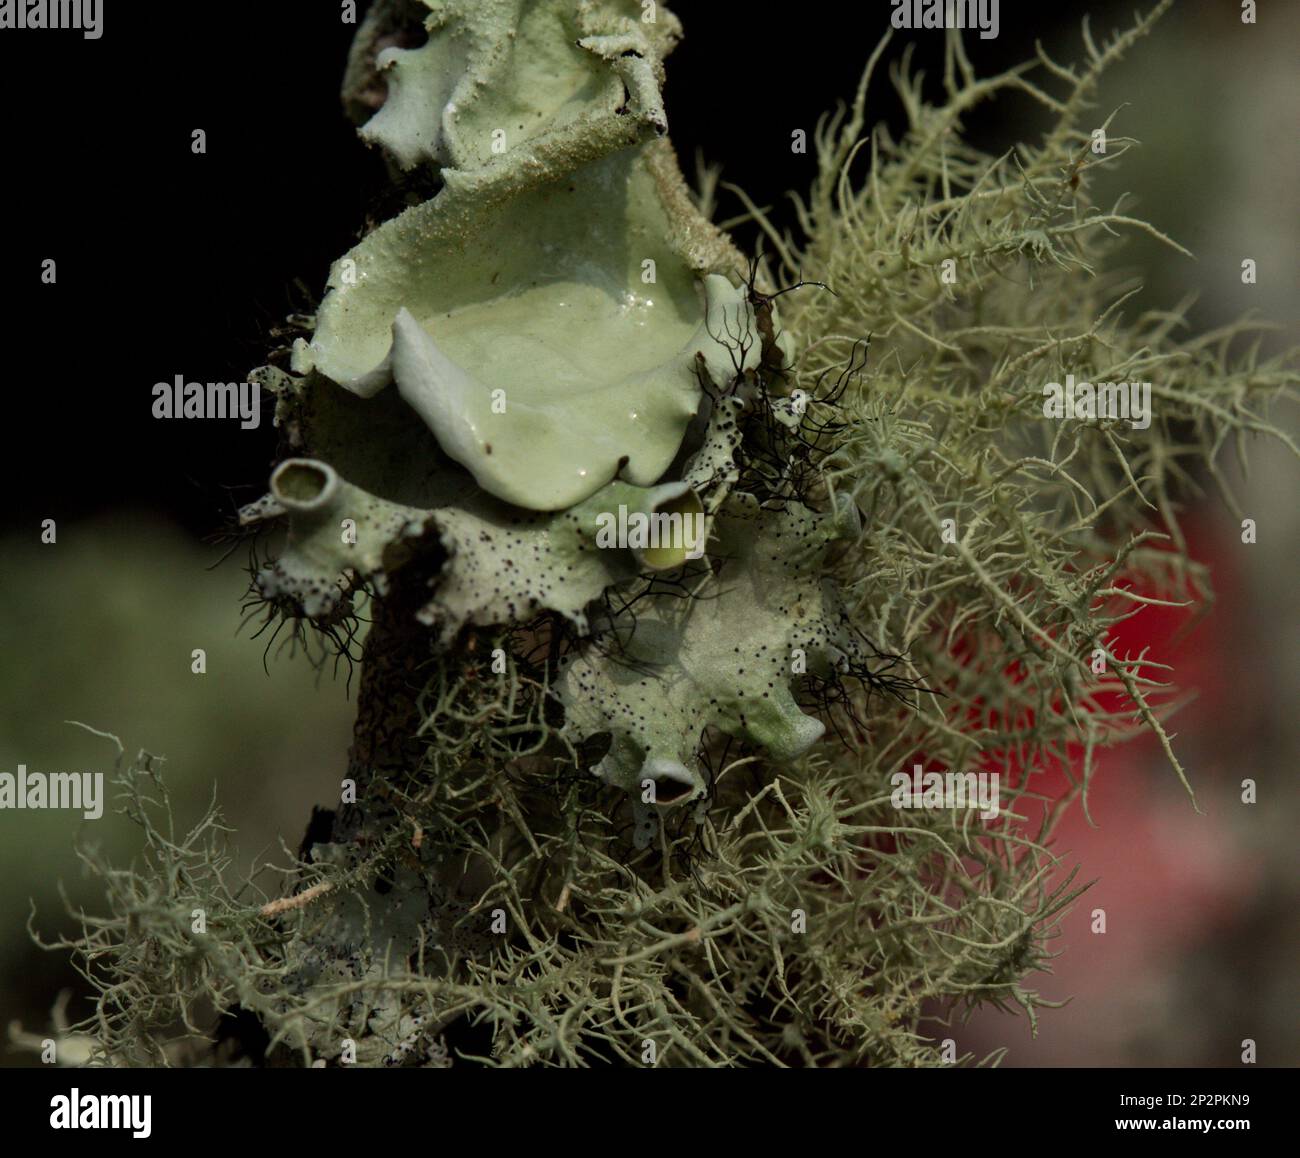 Lichens - provient d'algues ou de cyanobactéries vivant parmi les filaments de plusieurs espèces de champignons dans une relation mutualiste. Banque D'Images